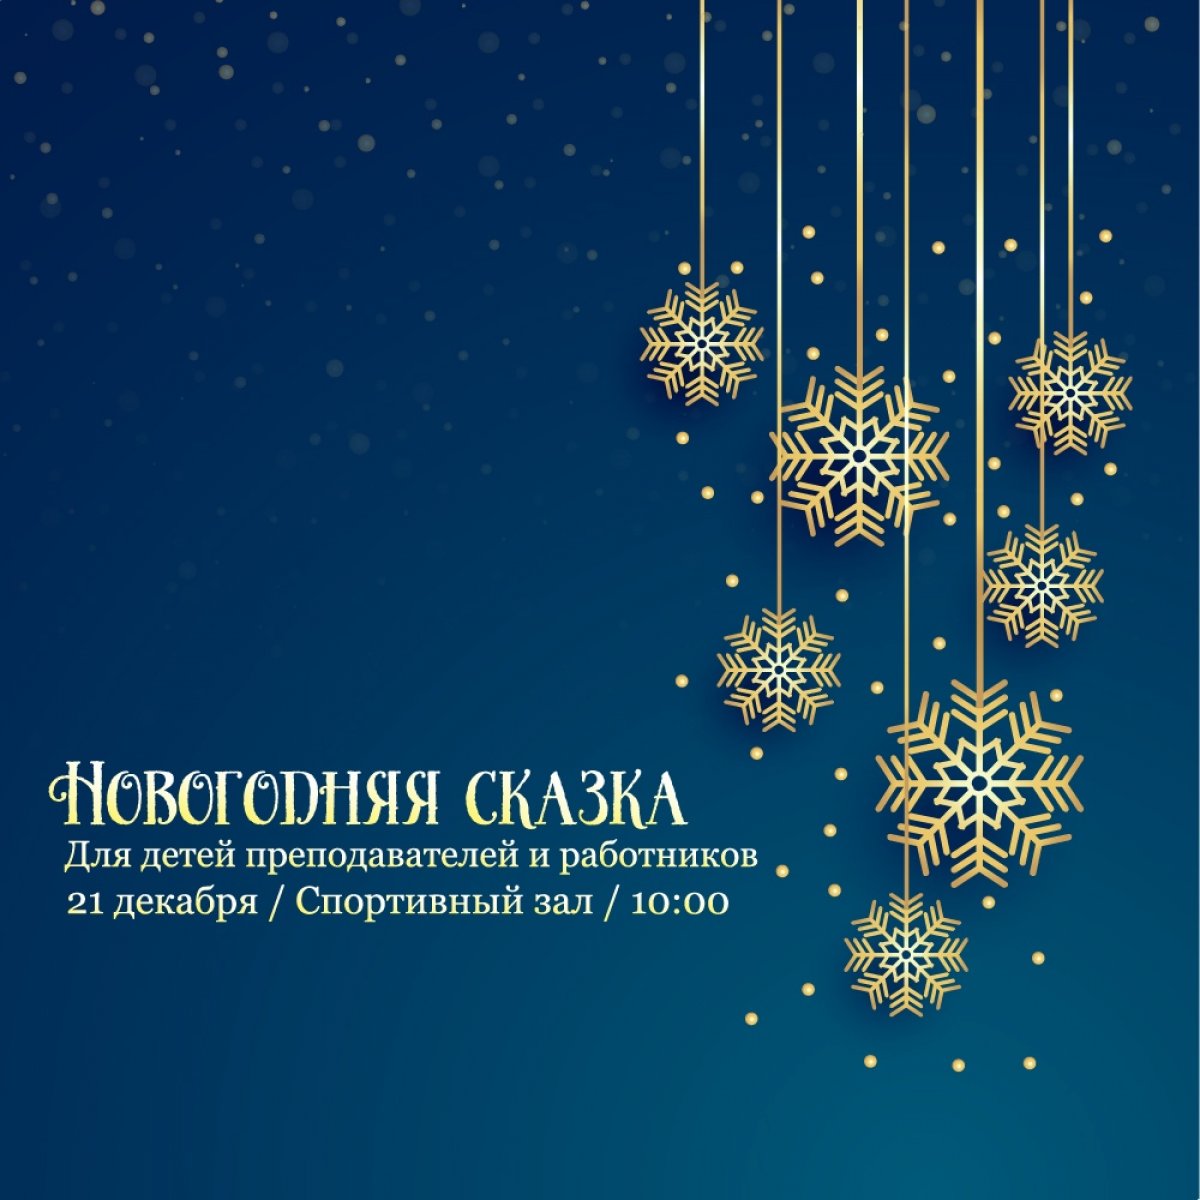 Дорогие преподаватели и работники Казанского филиала РГУП, приглашаем вас и ваших детей окунуться в новогоднюю сказку, которая состоится 21 декабря в 10:00 в спортивном зале.🎉